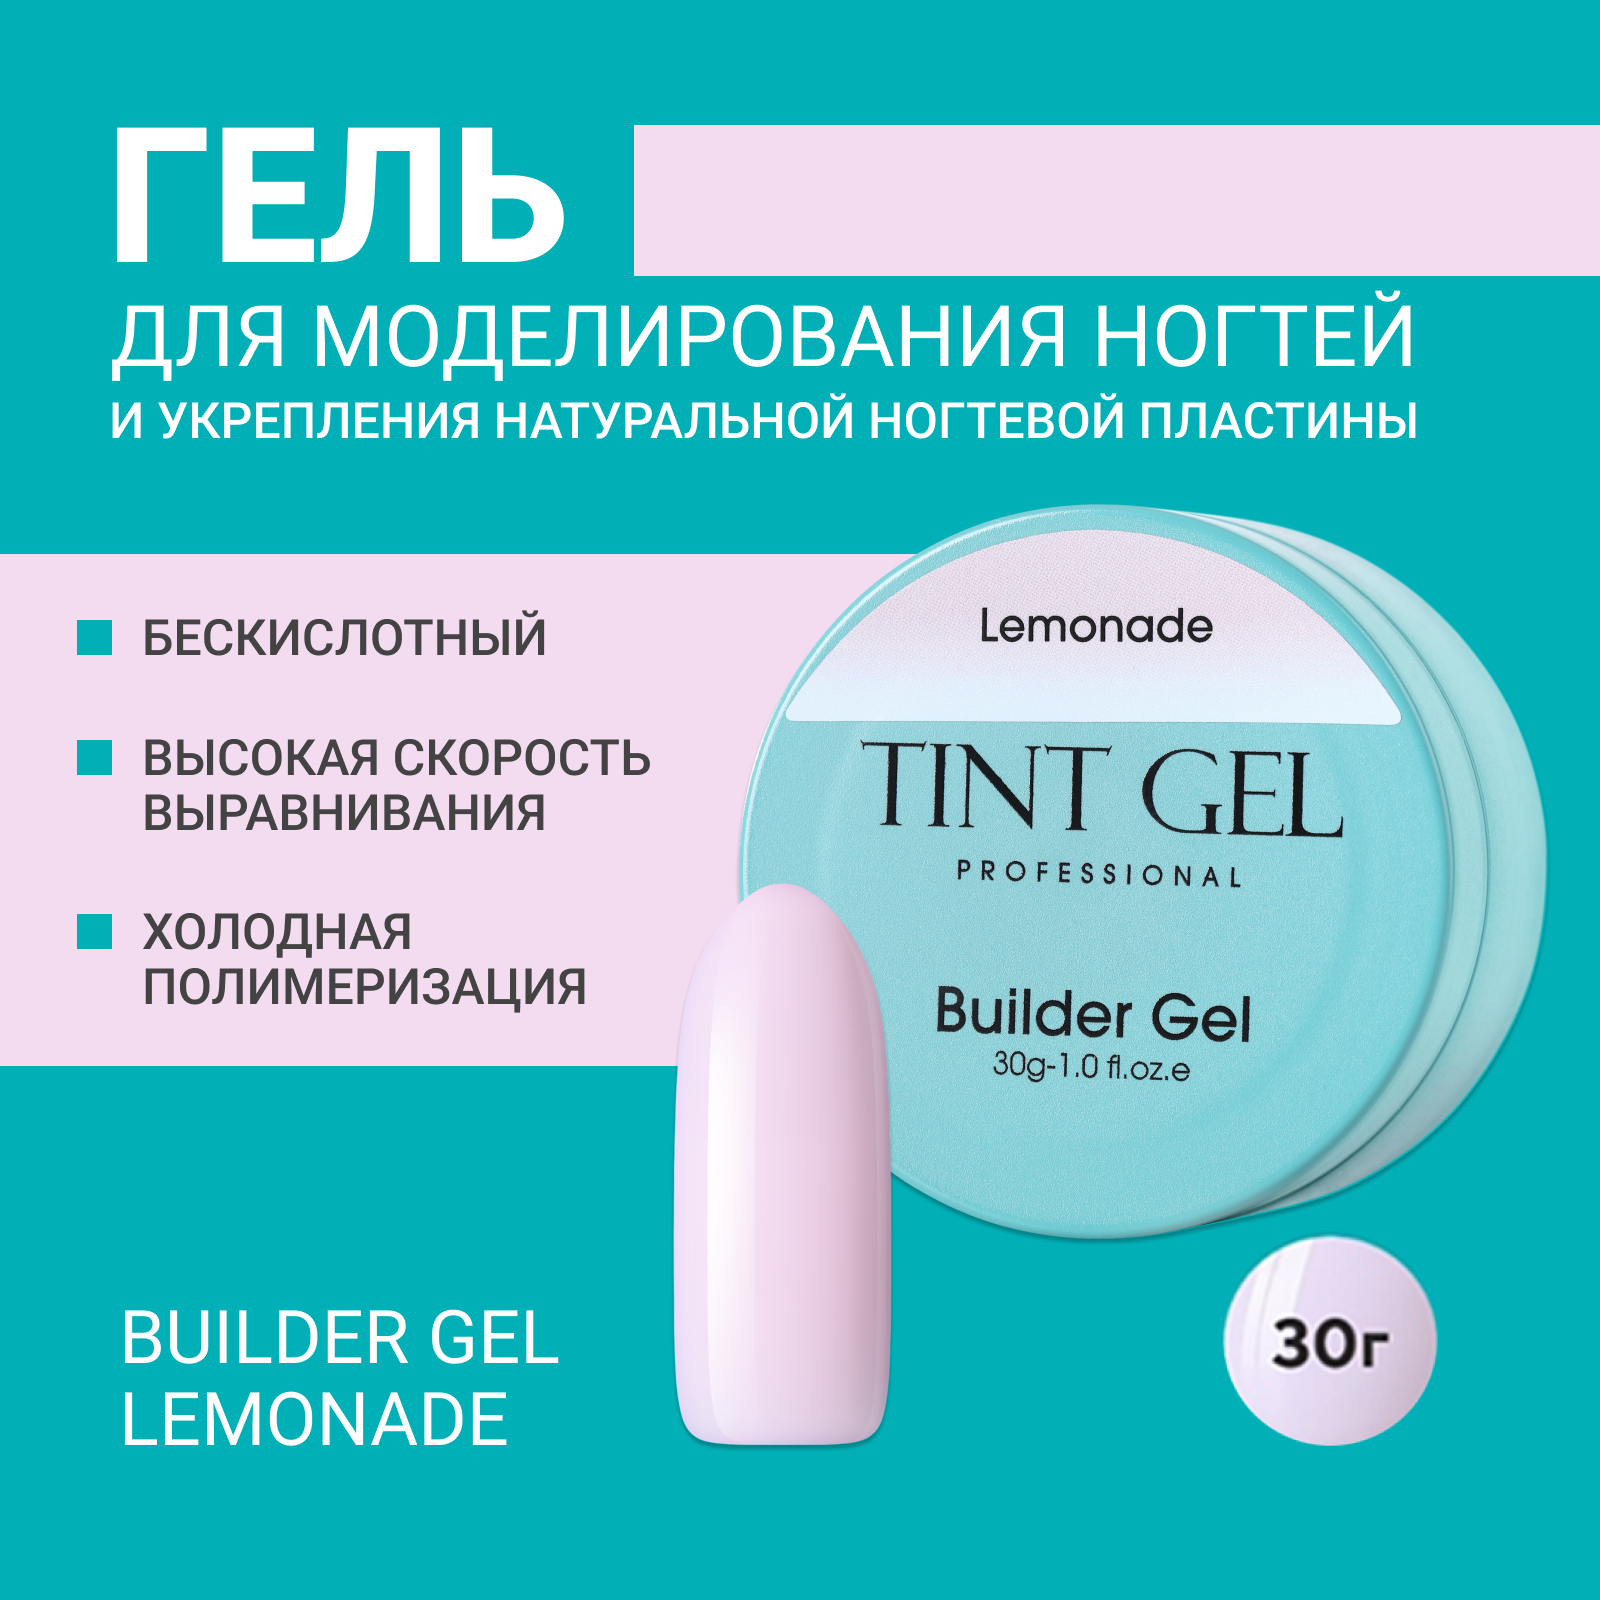 Гель Tint Gel Professional Builder gel Lemonade 30 г ной гель tint 517 5 10 5 10 15 мл